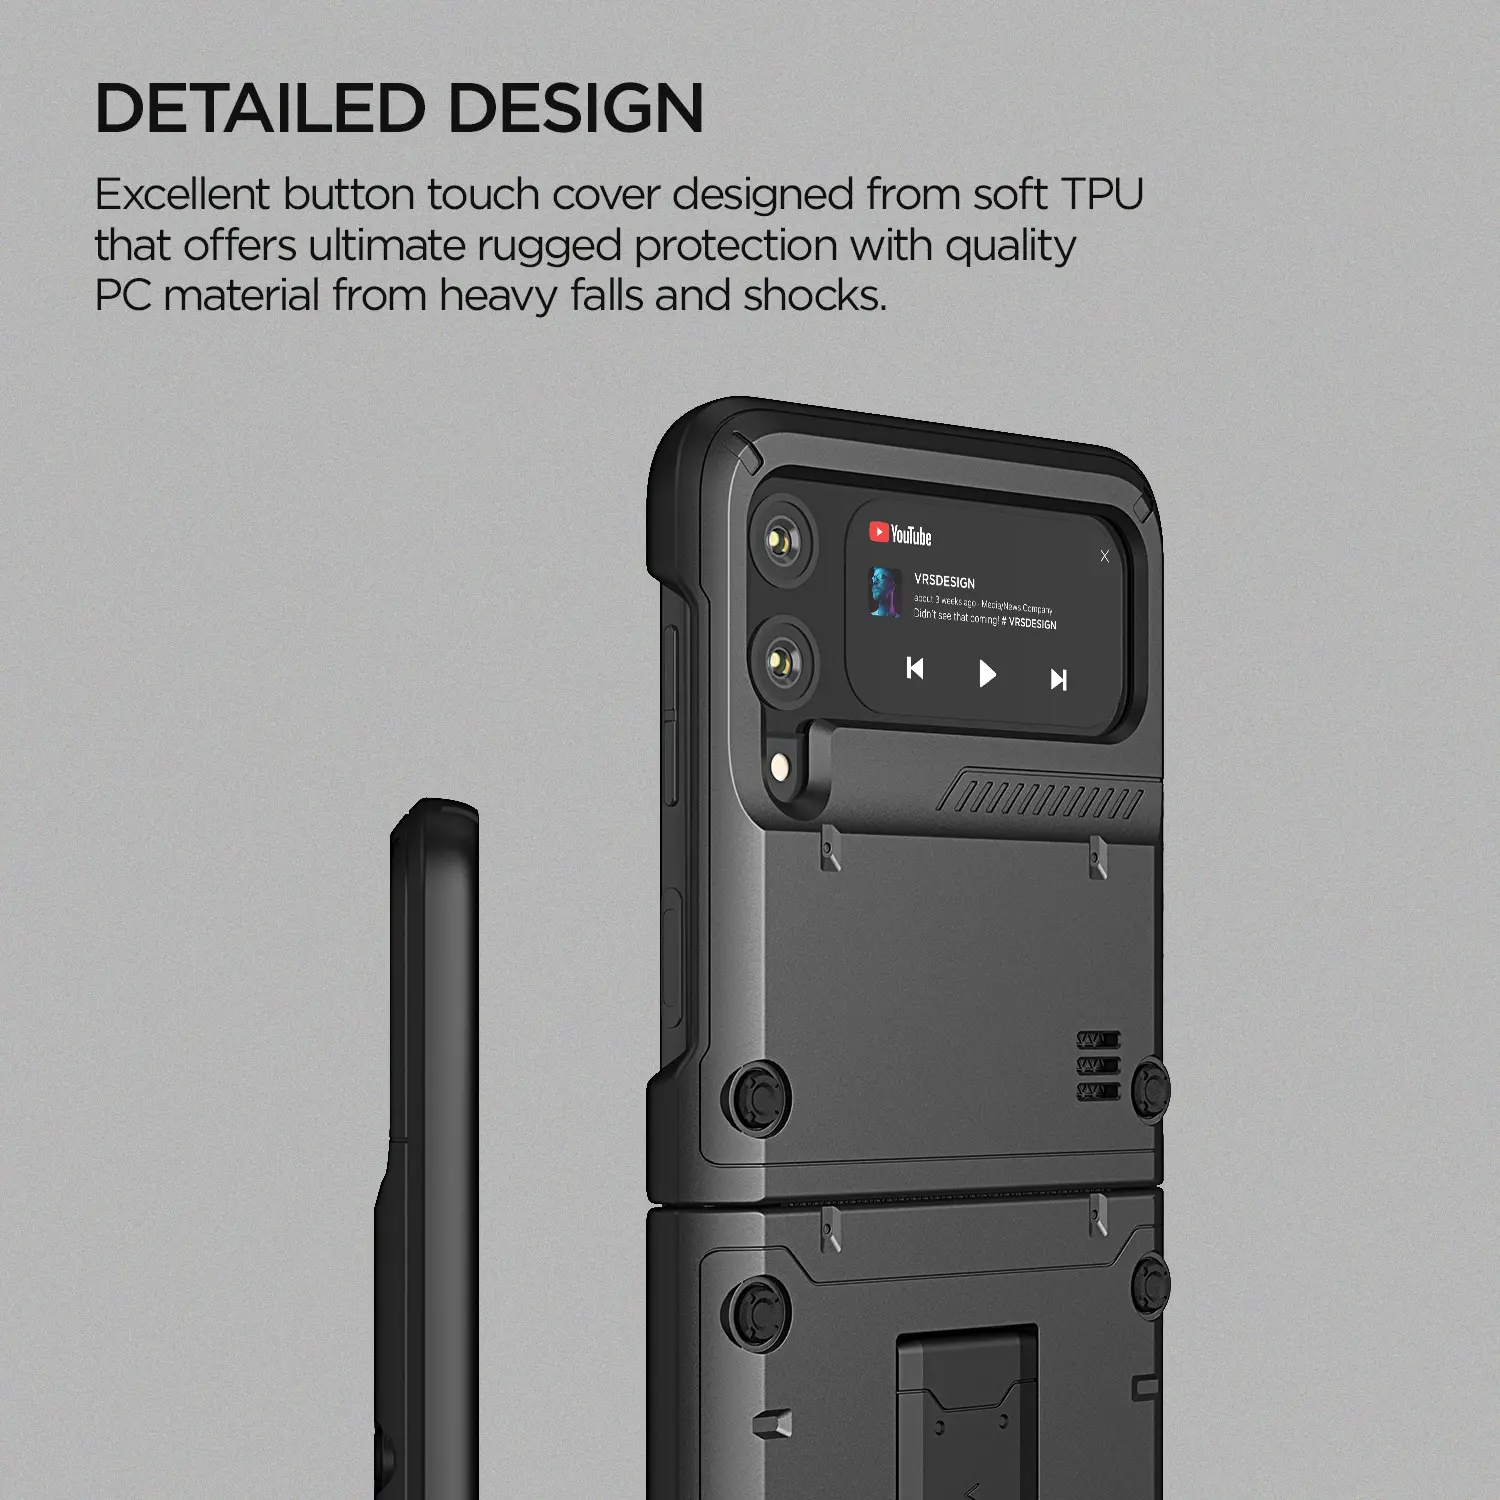 เคสกันกระแทก VRS รุ่น Quick Stand Active - Galaxy Z Flip 3 - Metal Black